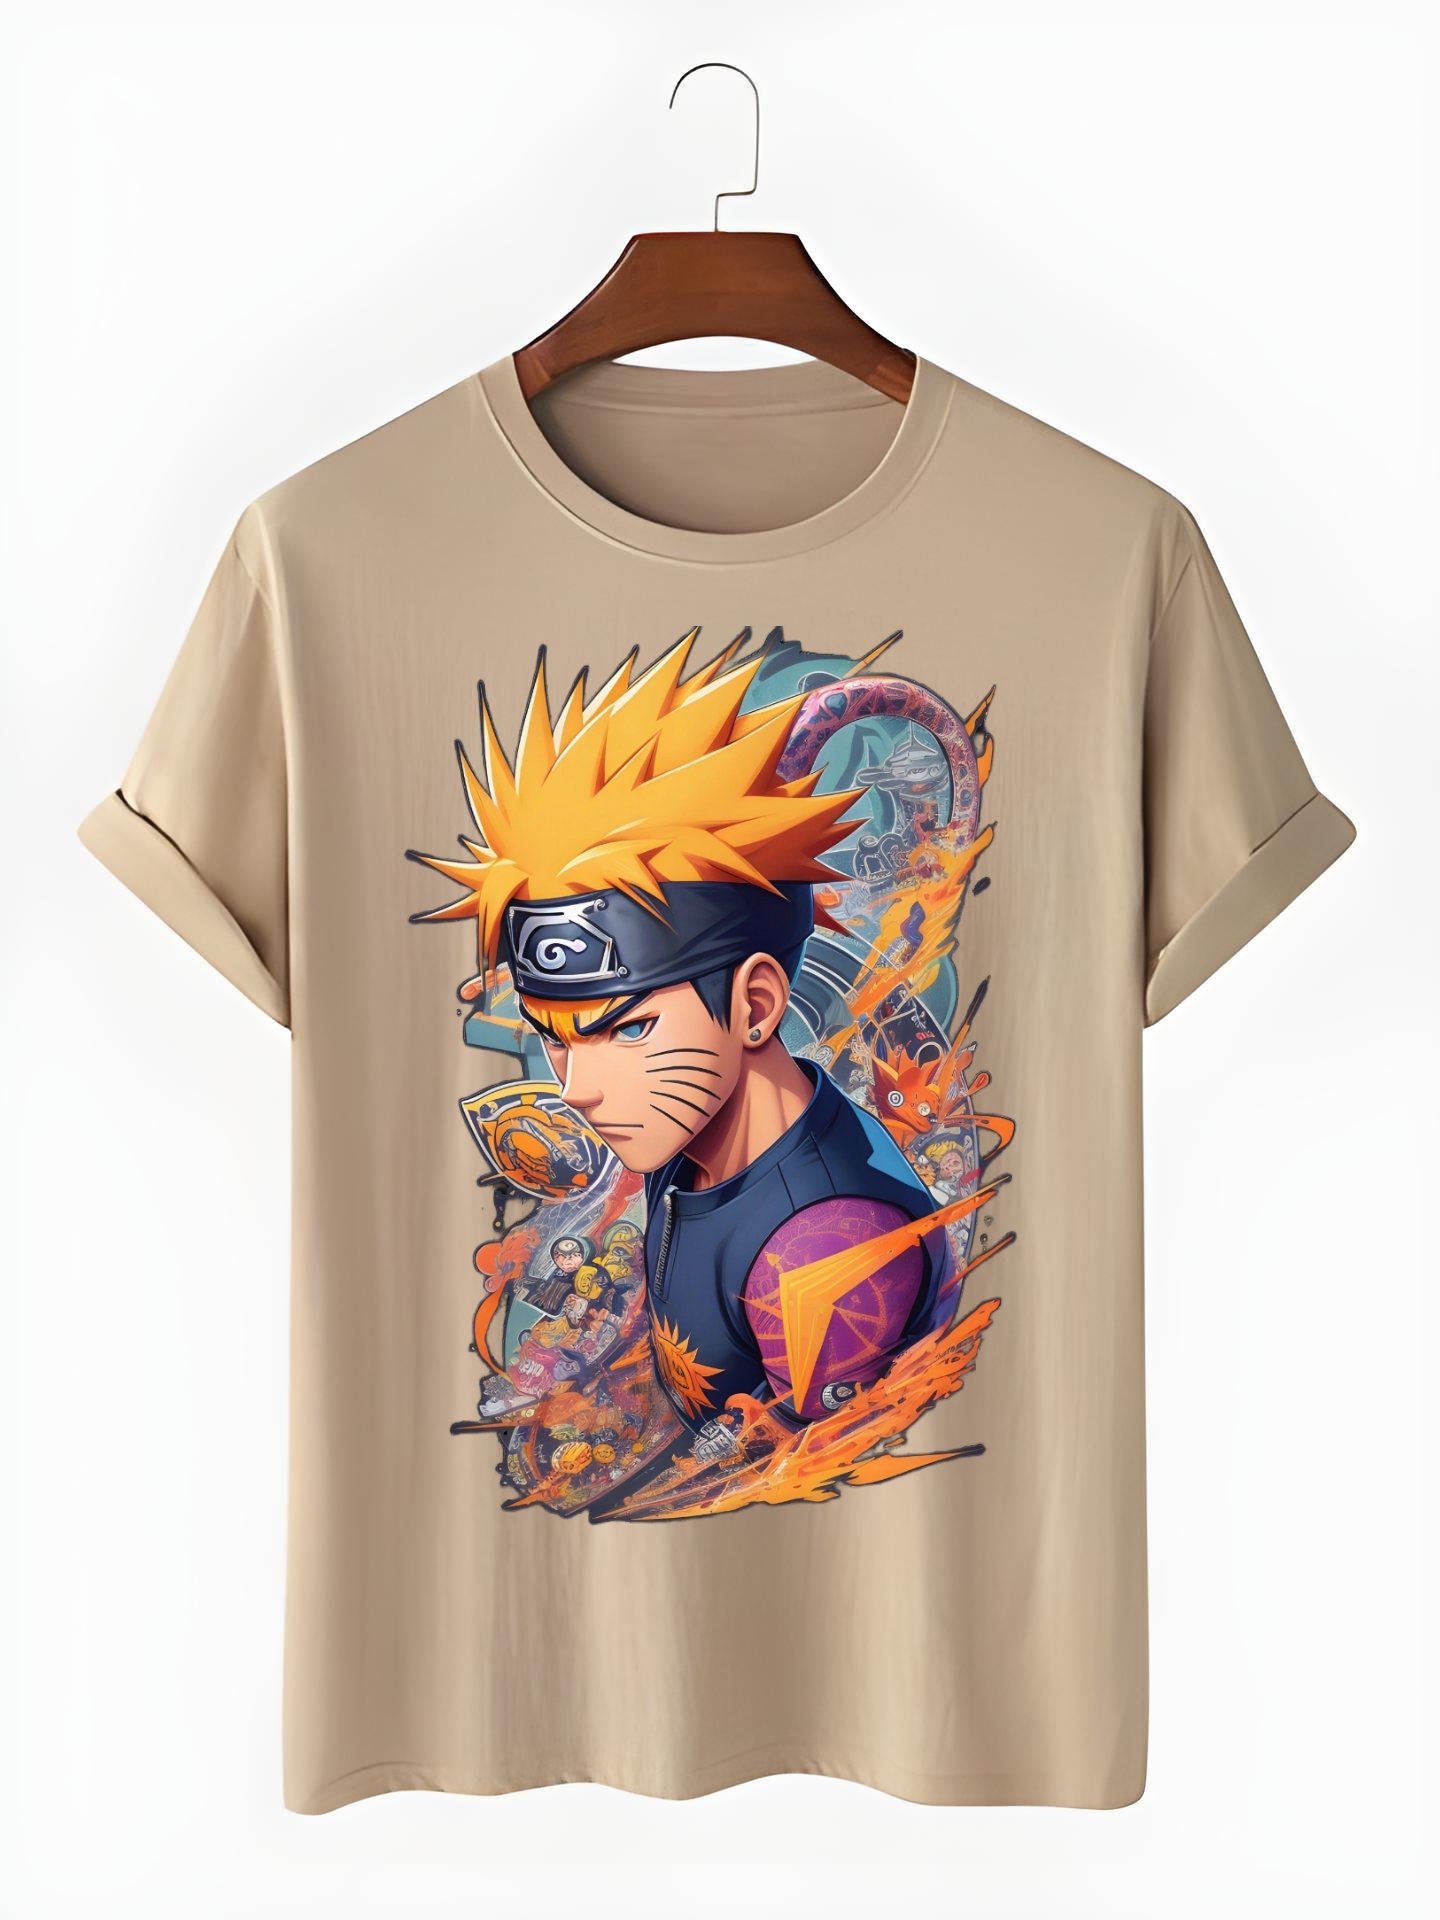 Naruto and Sasuke - Naruto Uzumaki - T-Shirt | TeePublic